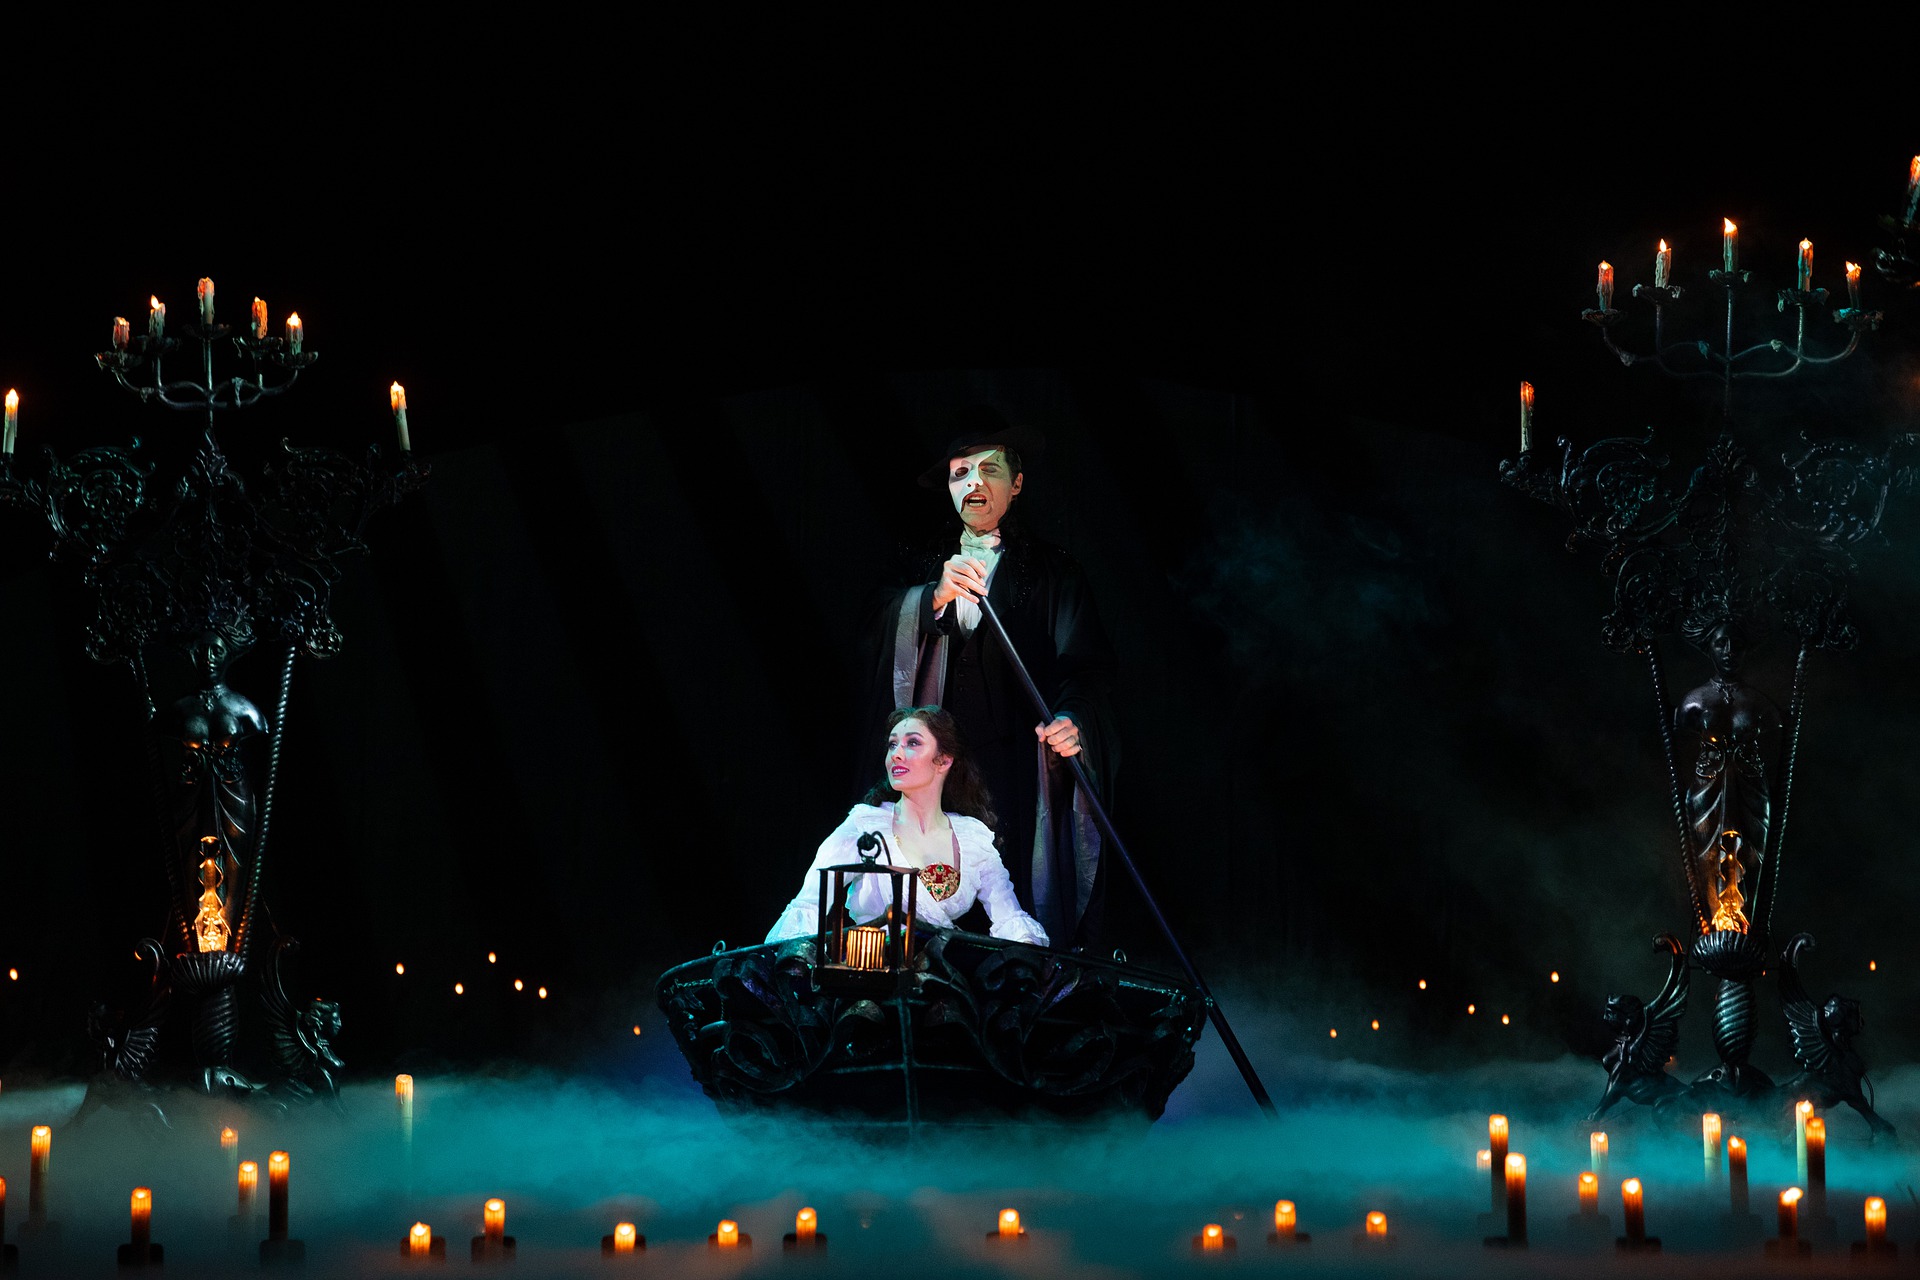 aktorzy operowi na scenie mężczyzna w masce w czarnym stroju wiosłuje stojąc w łódce kobieta w białej sukni siedzi w łódce po obu stronach są świeczniki pełne płonących świec